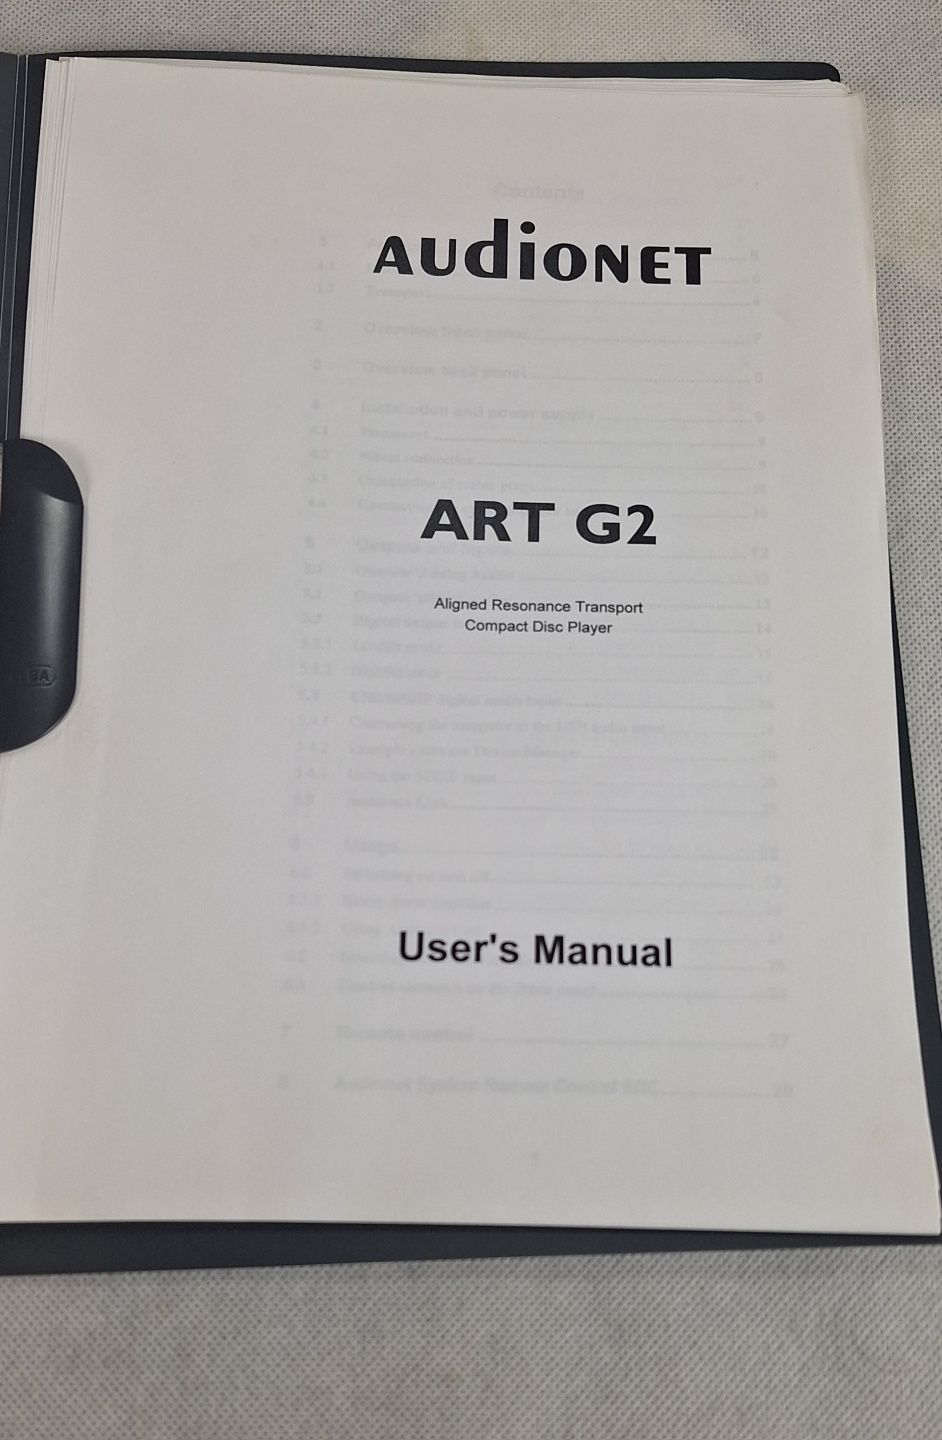 Instrukcja obsługi odtwarzacz CD audionet ART G2